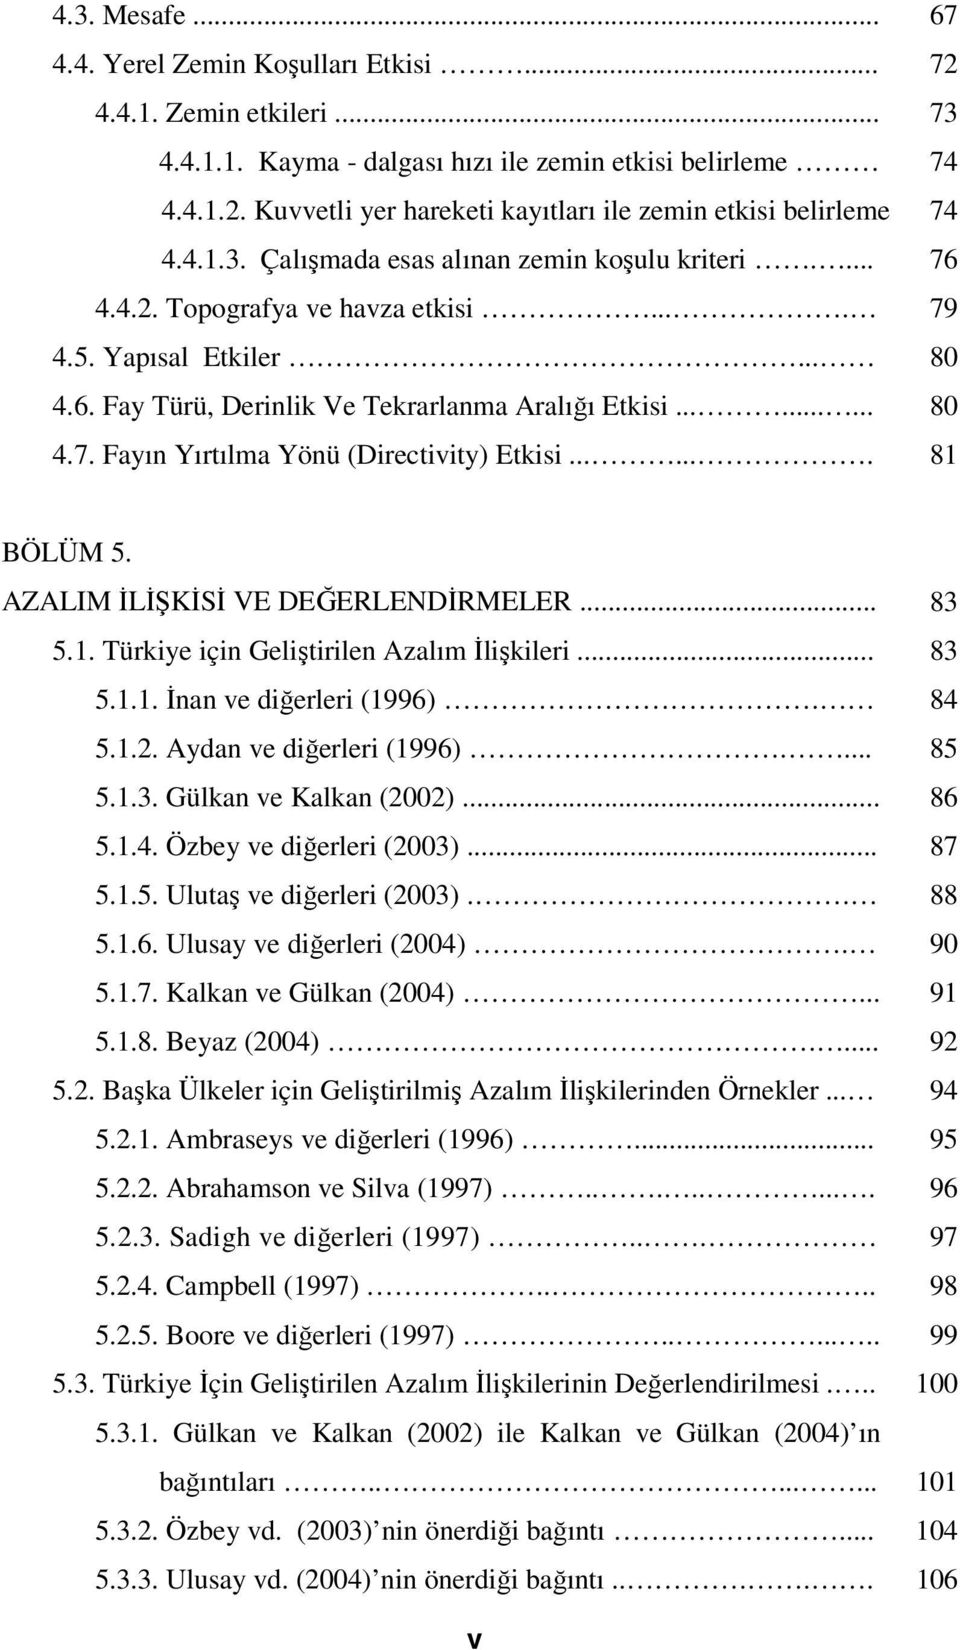 ...... 81 BÖLÜM 5. AZALIM İLİŞKİSİ VE DEĞERLENDİRMELER... 83 5.1. Türkiye için Geliştirilen Azalım İlişkileri... 83 5.1.1. İnan ve diğerleri (1996). 84 5.1.2. Aydan ve diğerleri (1996).... 85 5.1.3. Gülkan ve Kalkan (2002).